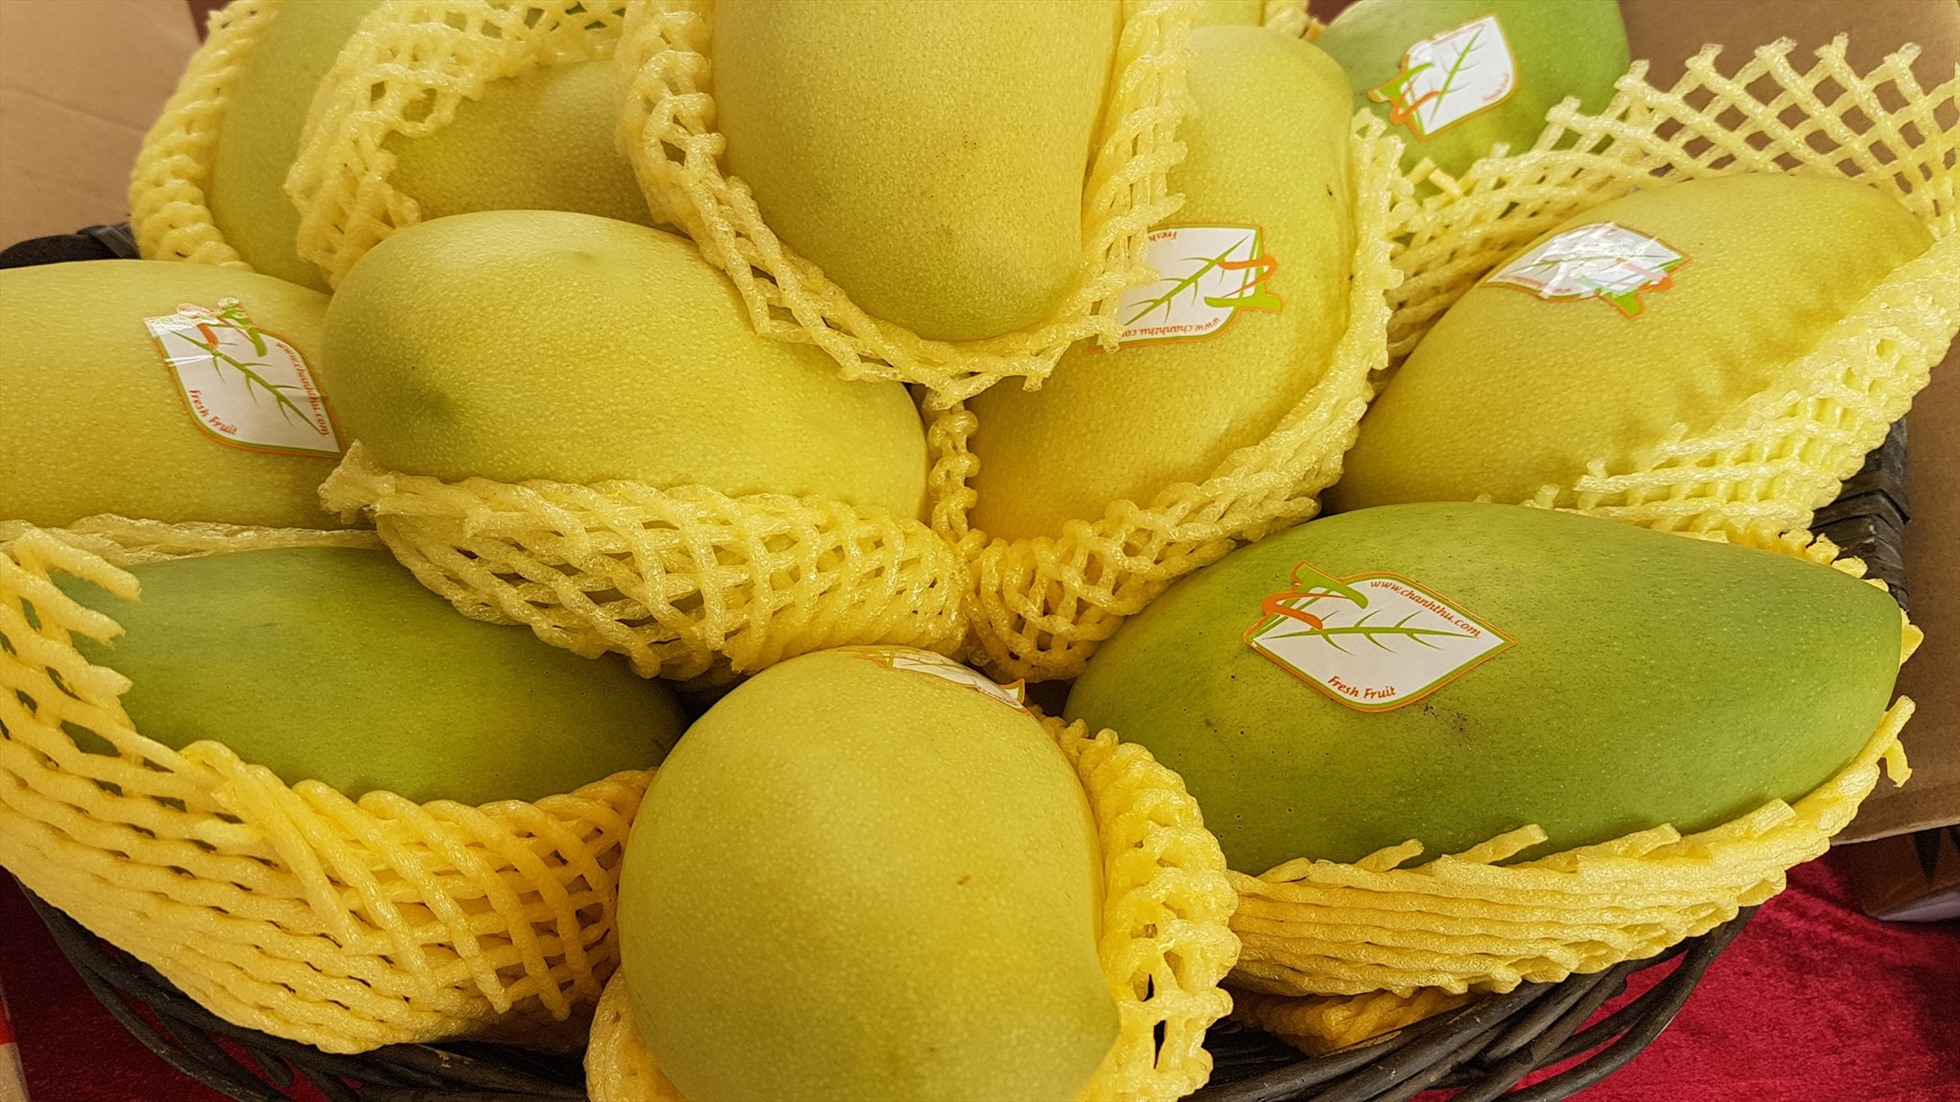 Nhiều loại trái cây của Việt Nam tiếp tục mở thêm thị trường xuất khẩu trên thế giới. Ảnh: Vũ Long